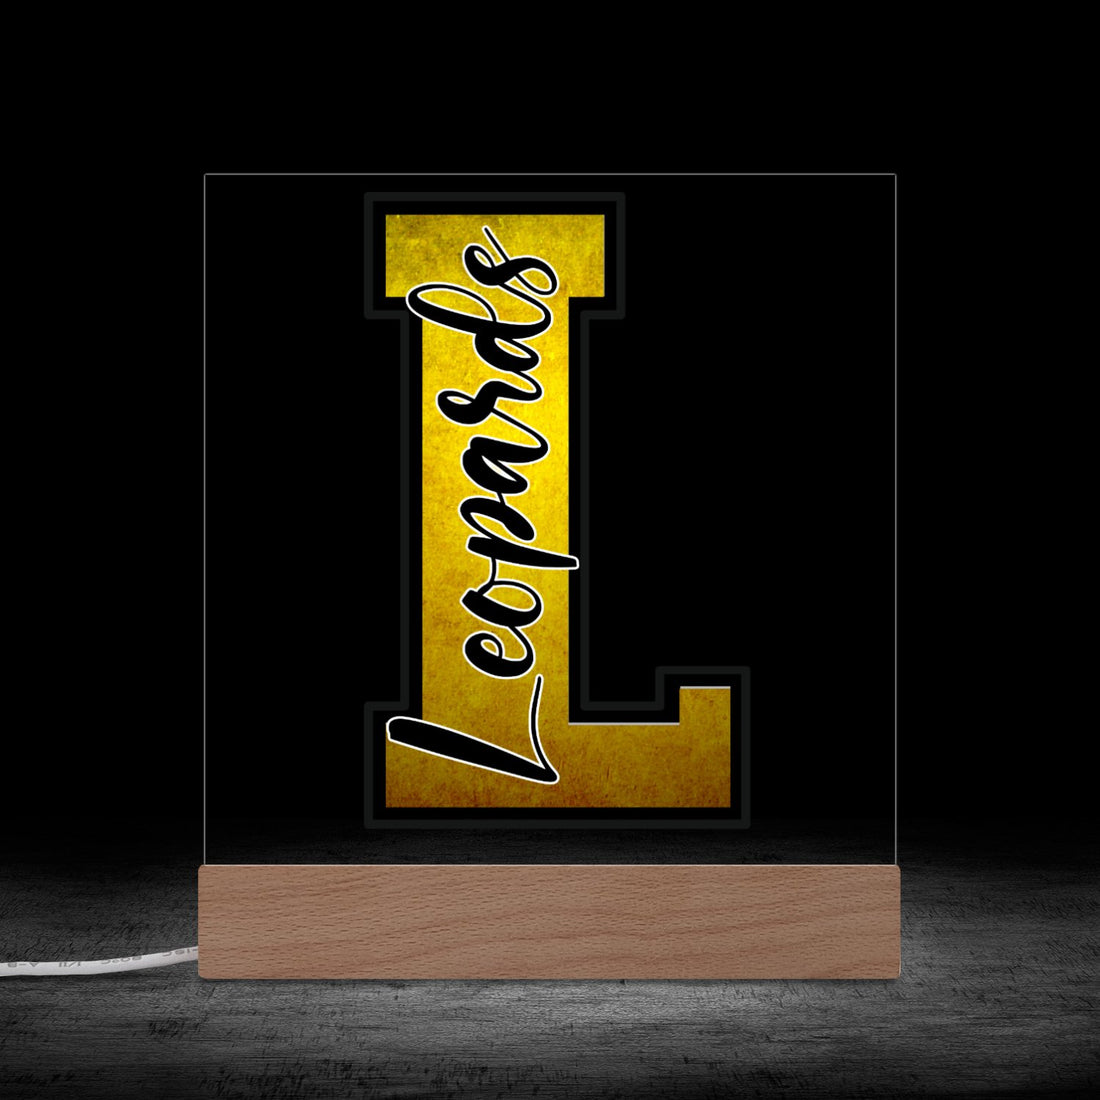 LaCrosse Leopards Plaque - Positively Sassy - LaCrosse Leopards Plaque